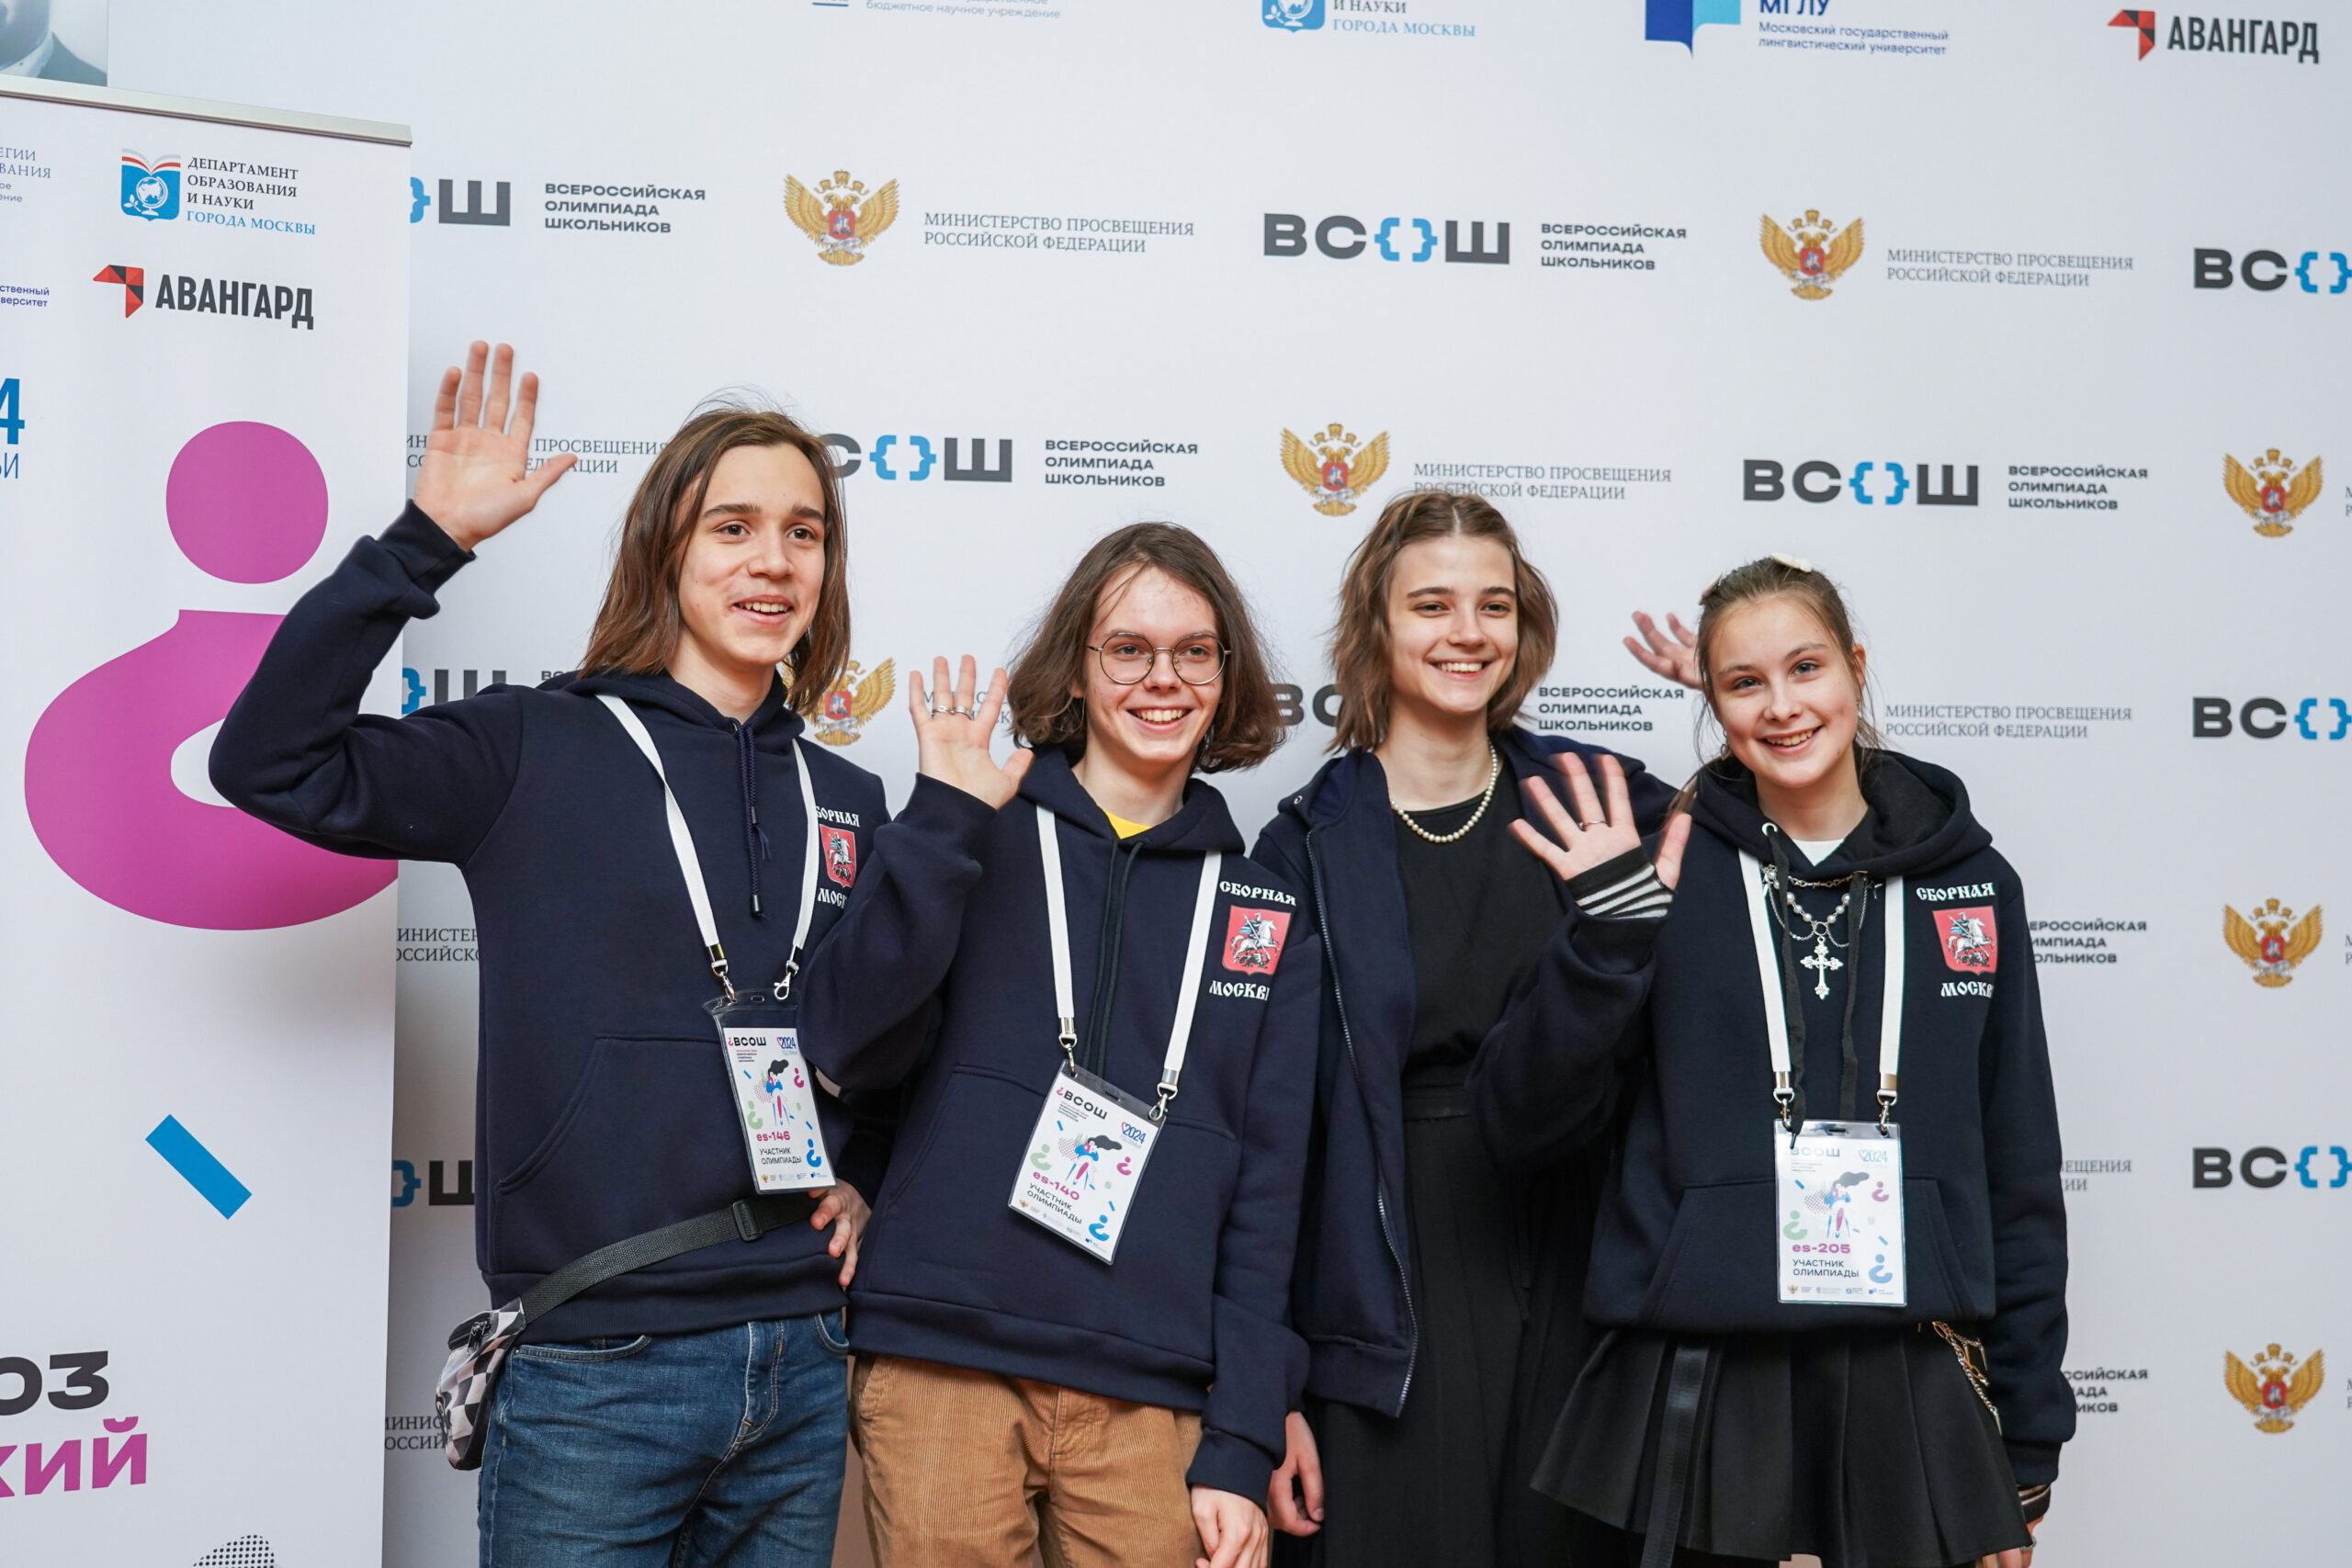 Московские школьники завоевали 108 дипломов на всероссийской олимпиаде по испанскому языку и истории